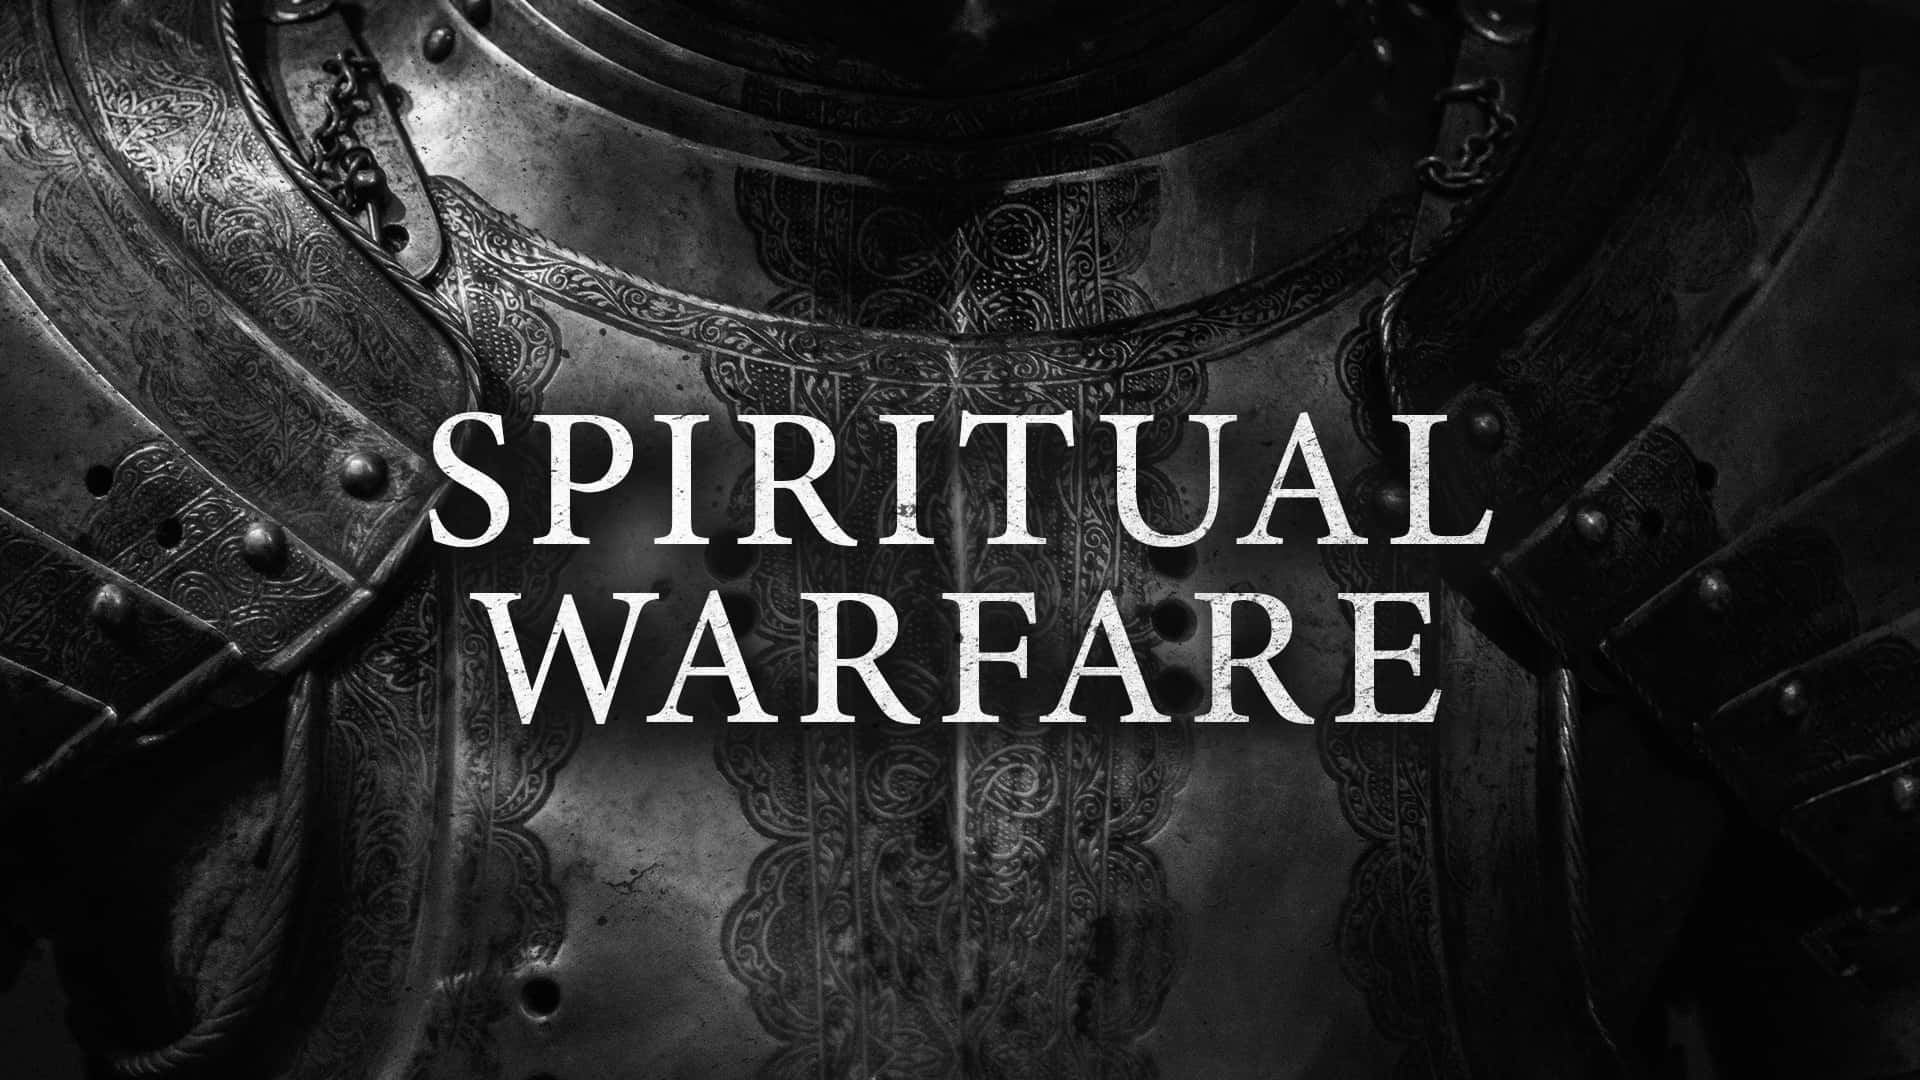 "Prepare yourself for spiritual warfare." Wallpaper